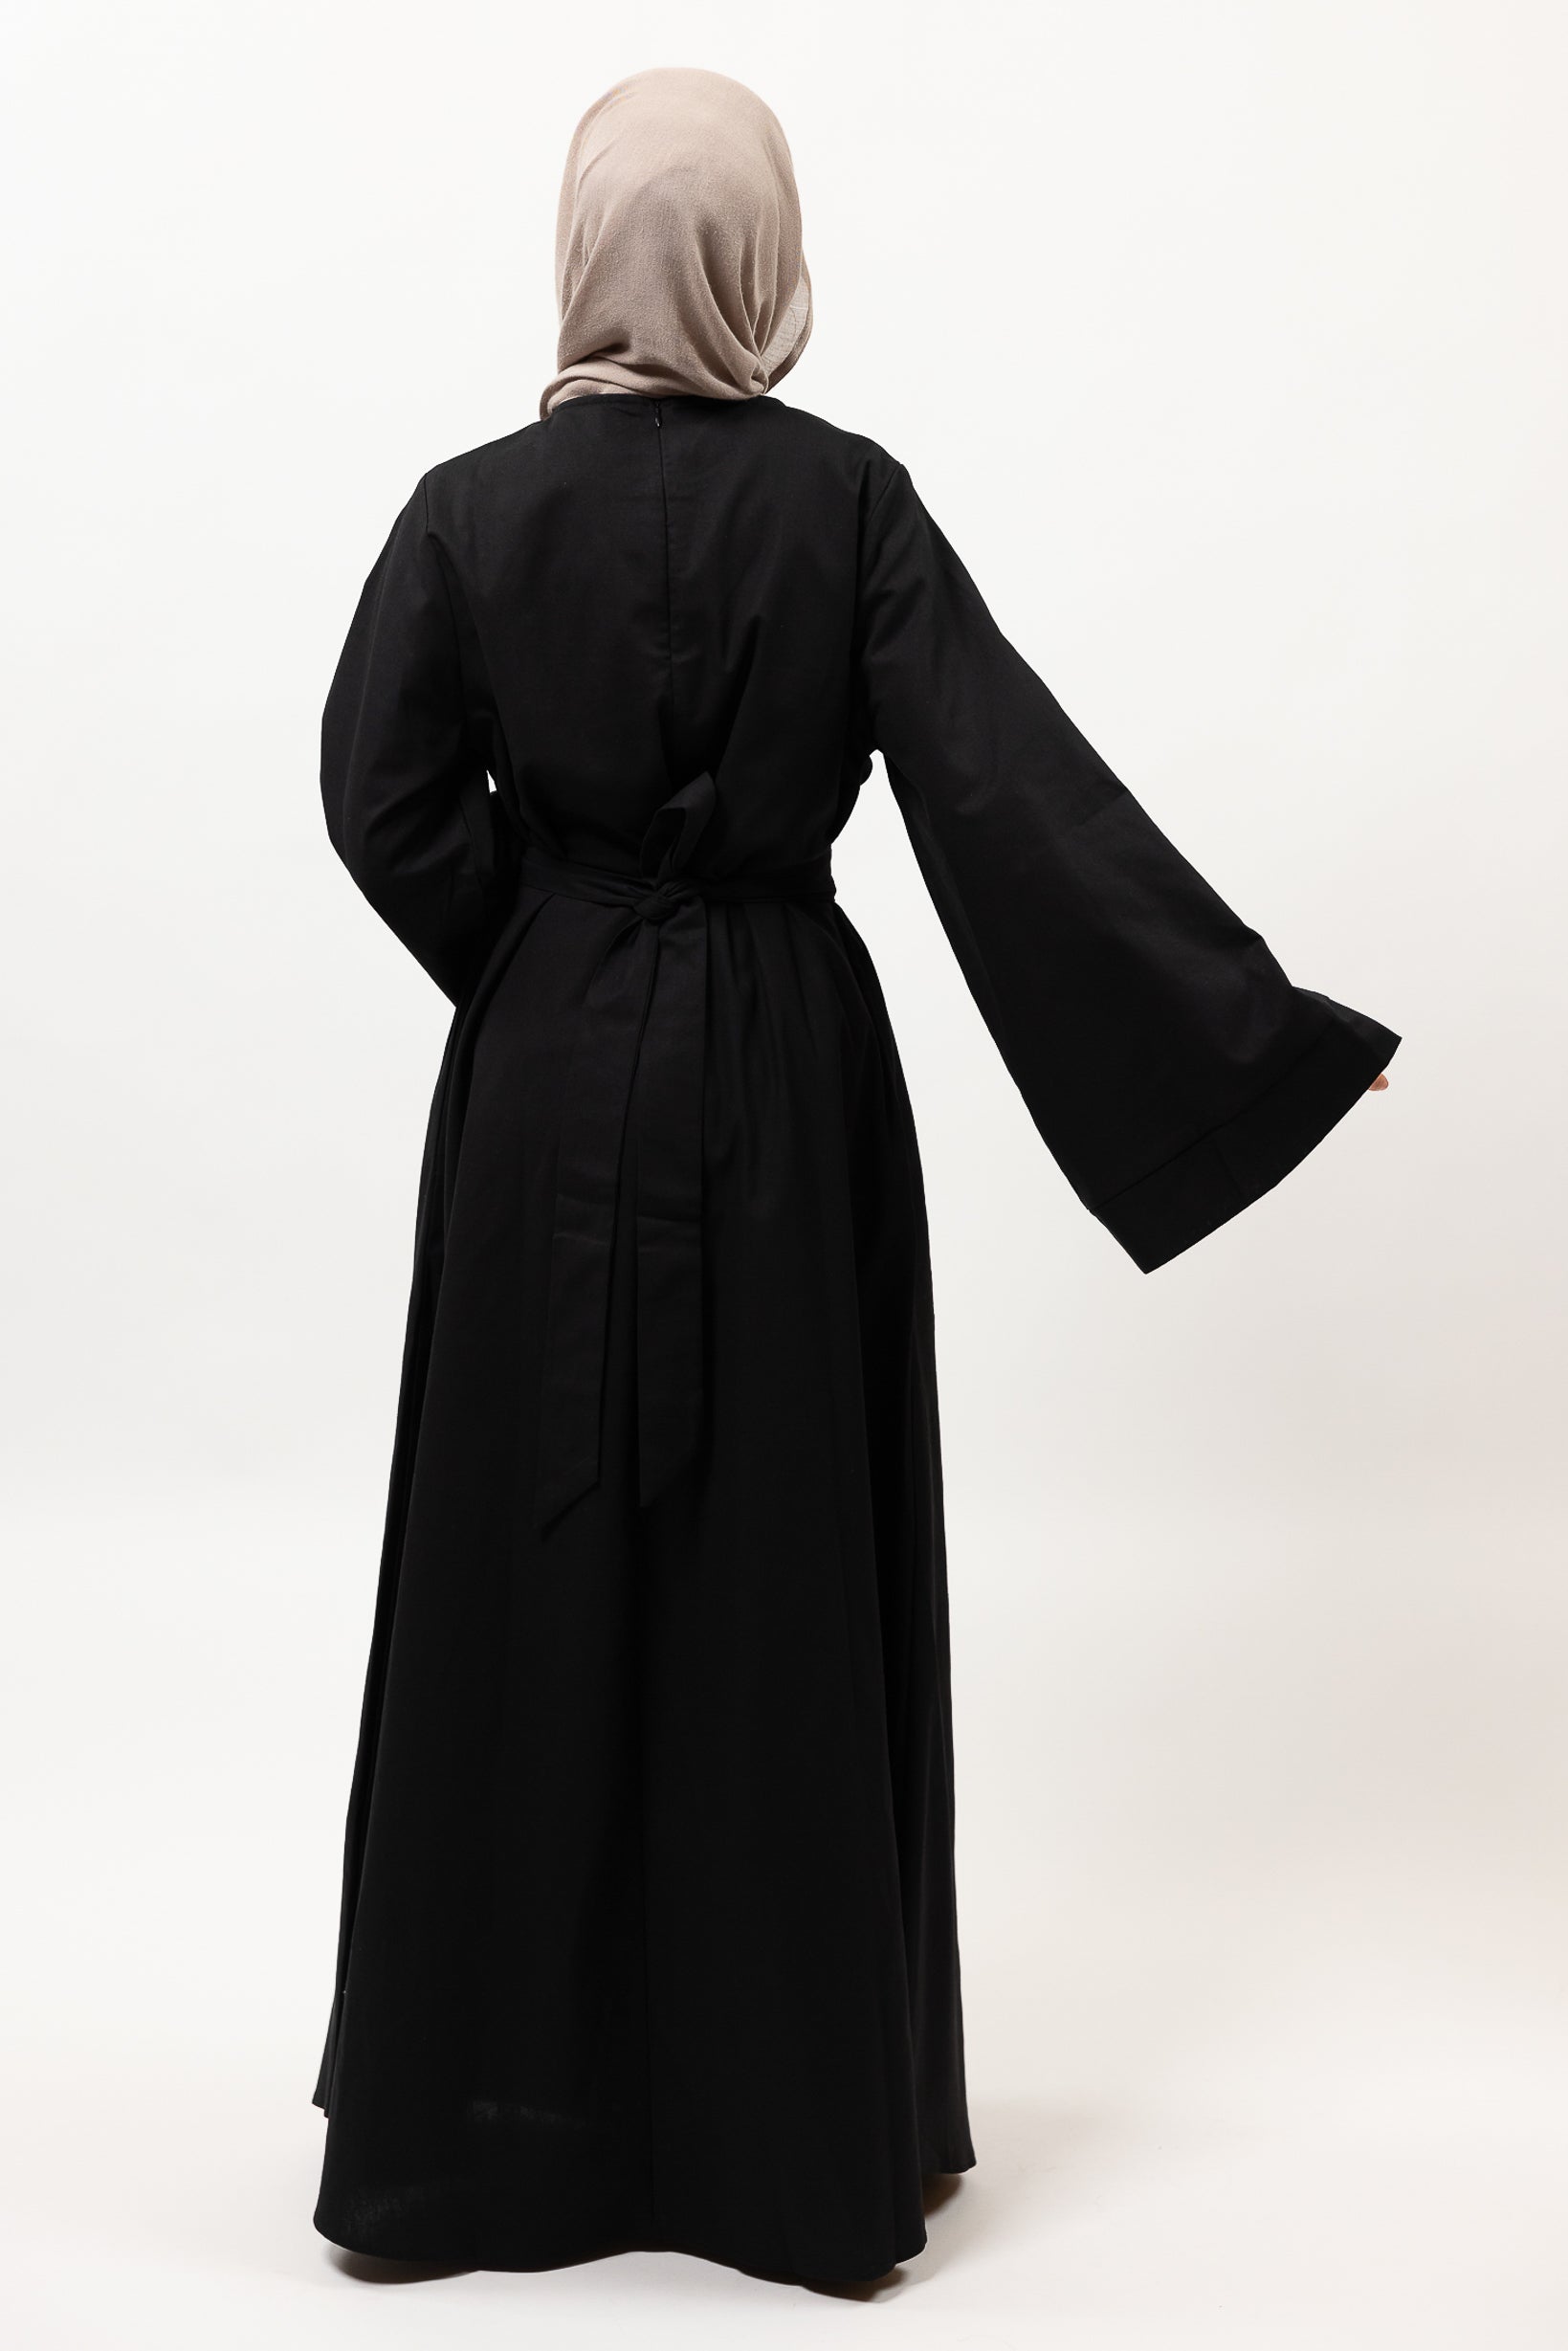 M8390Black-dress-abaya